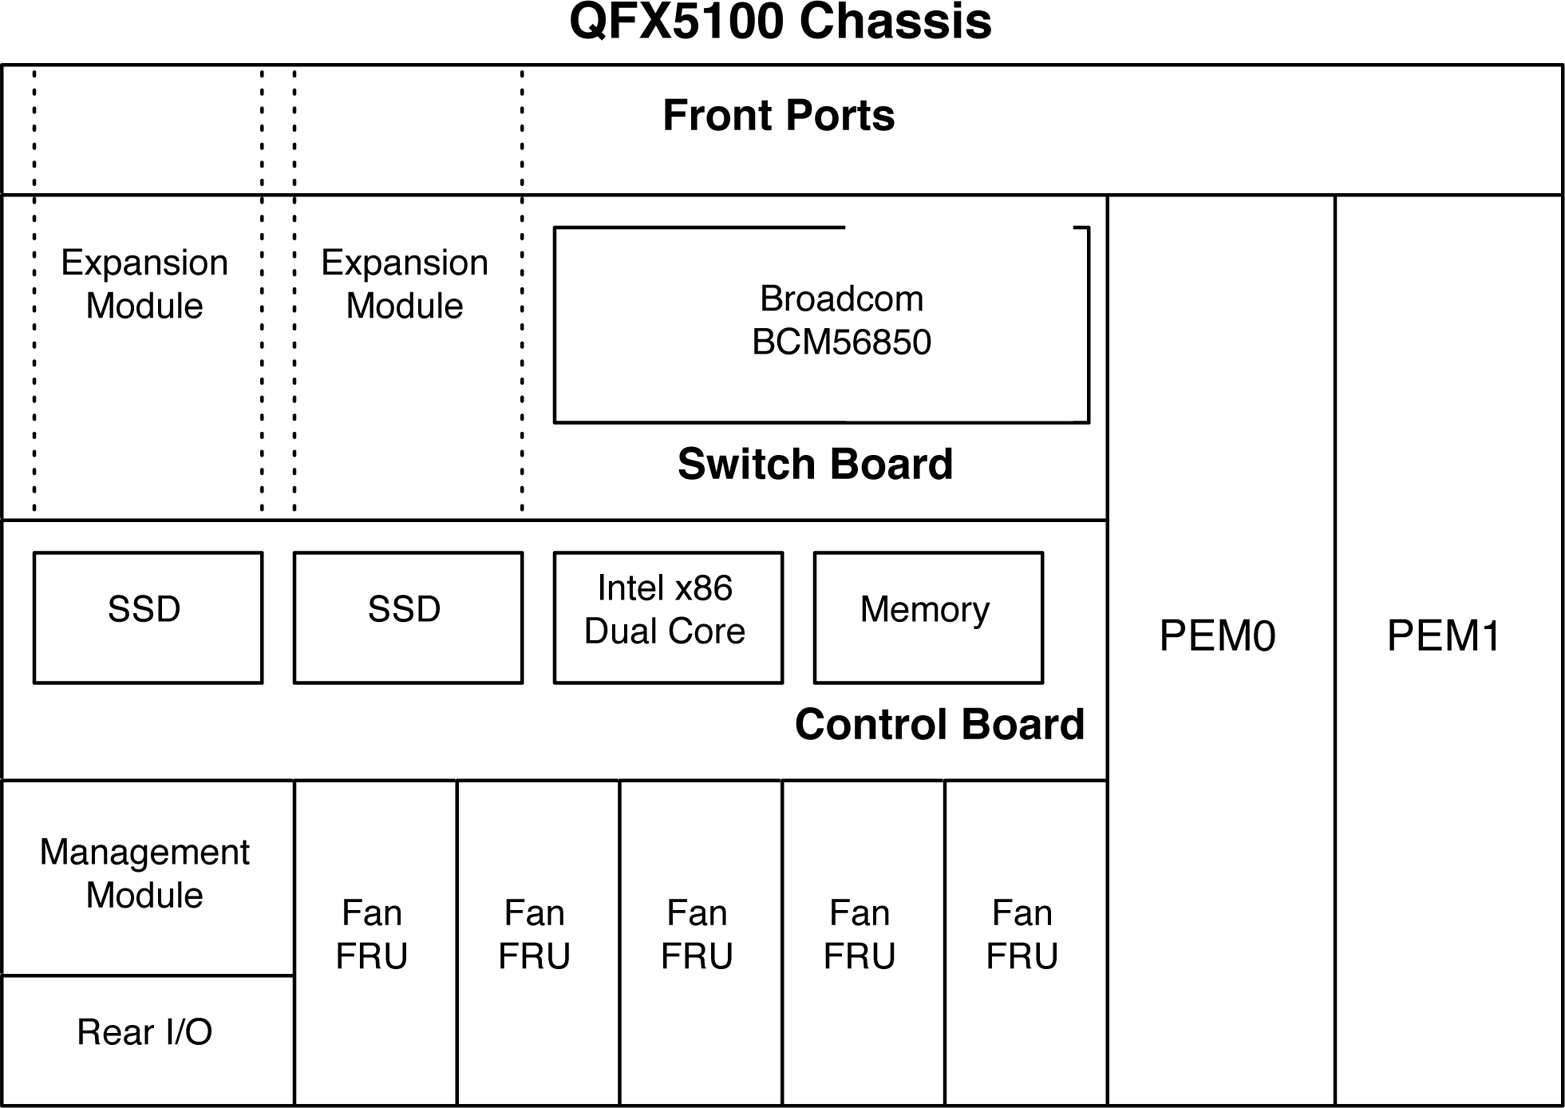 Juniper QFX5100 family hardware architecture